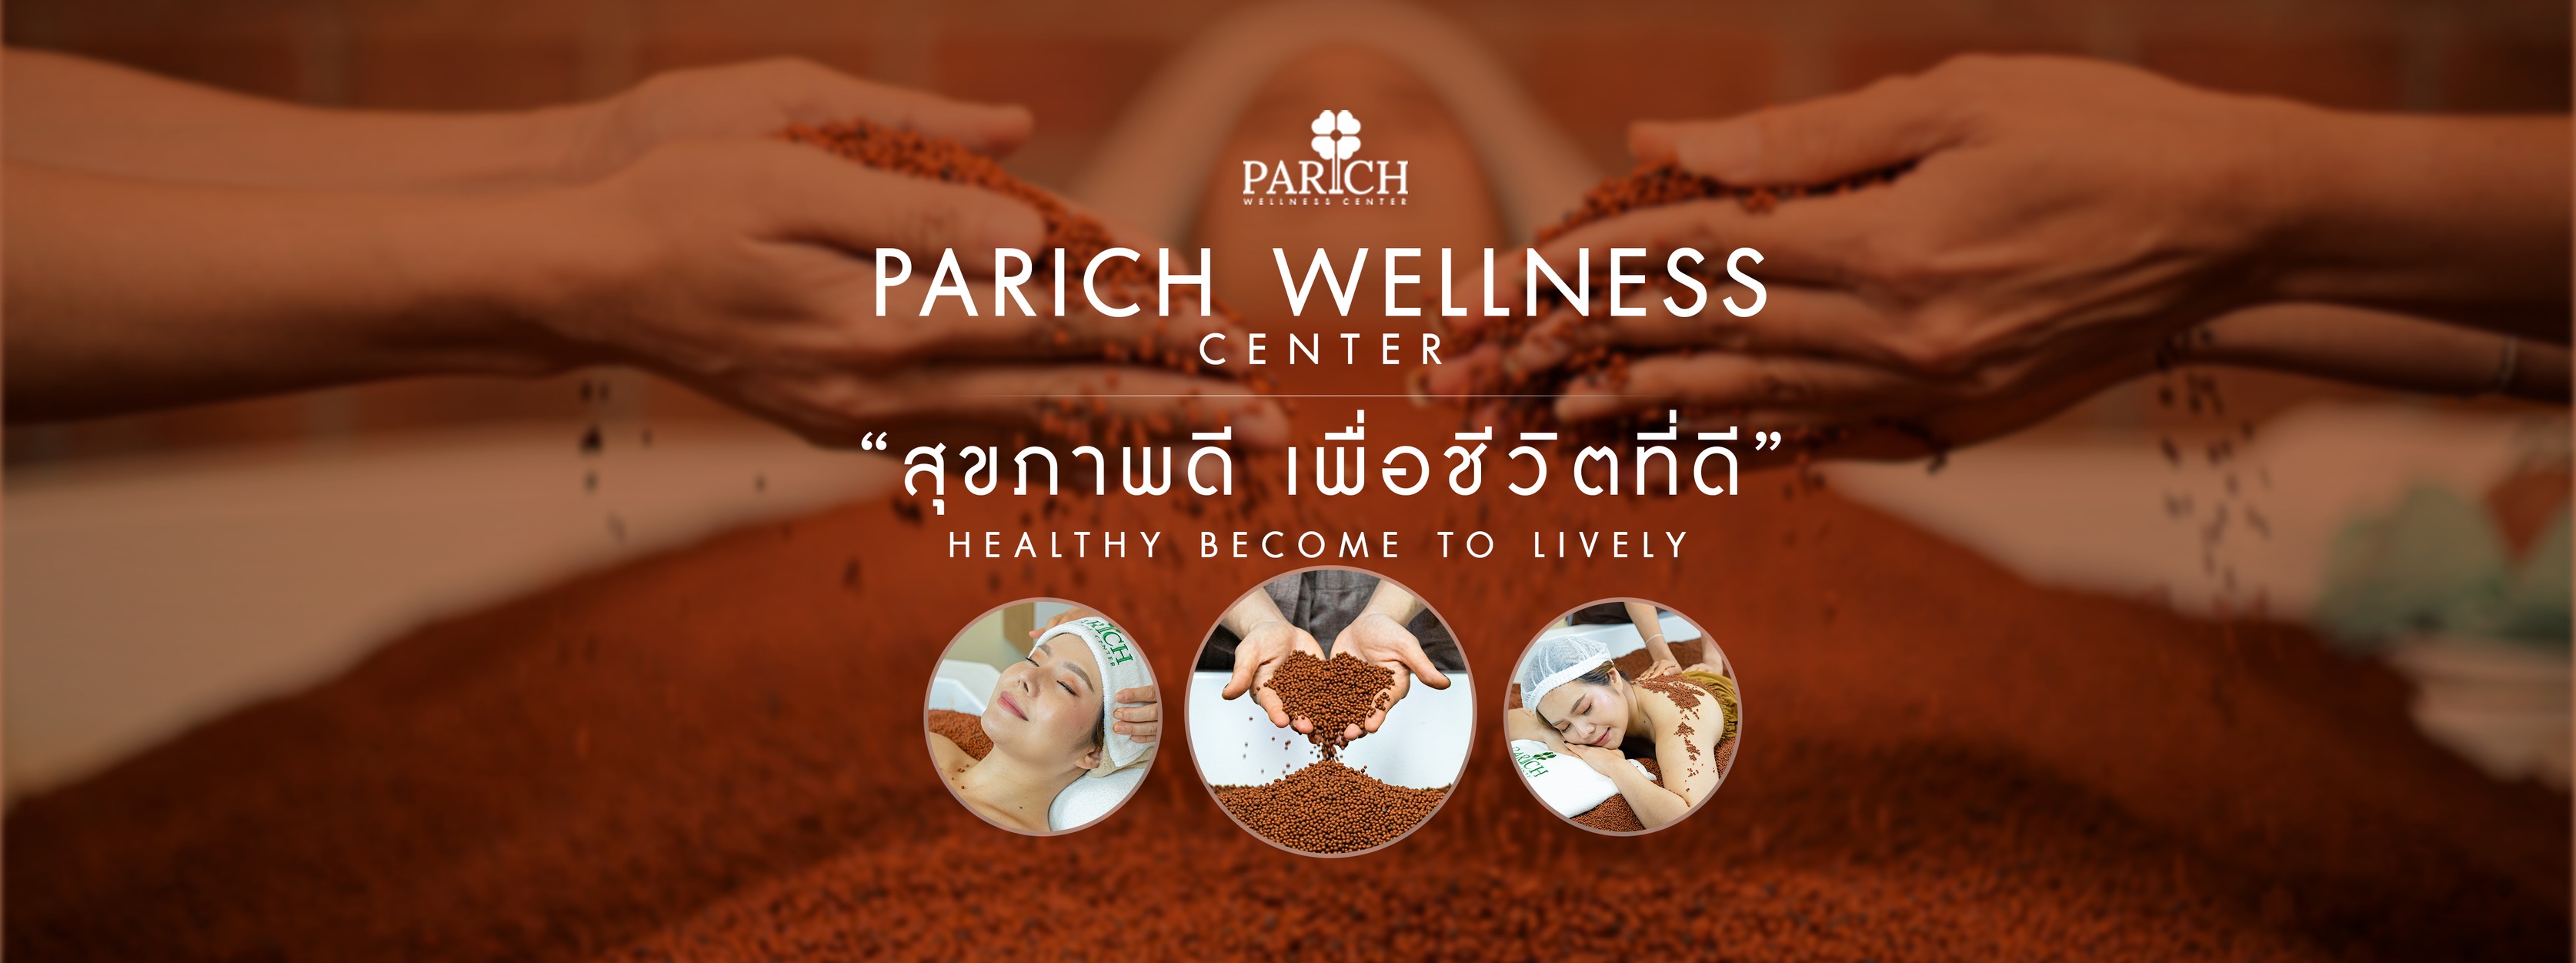 Parich Wellness Center